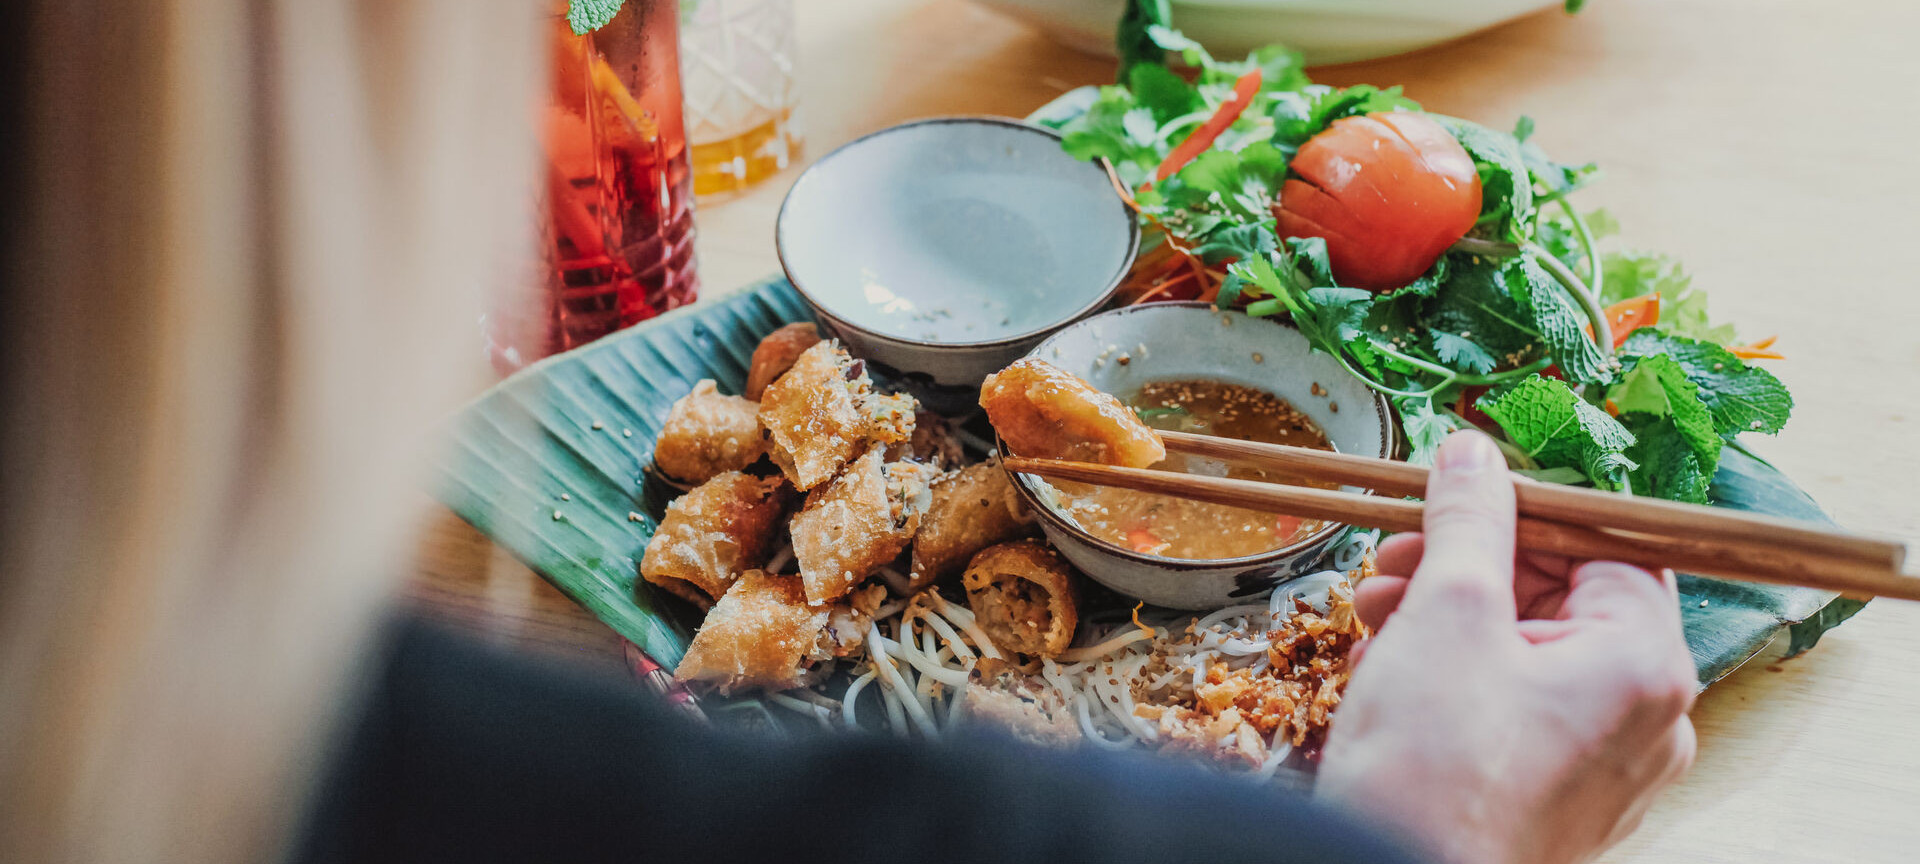 Asiatisches Essen auf dem Teller